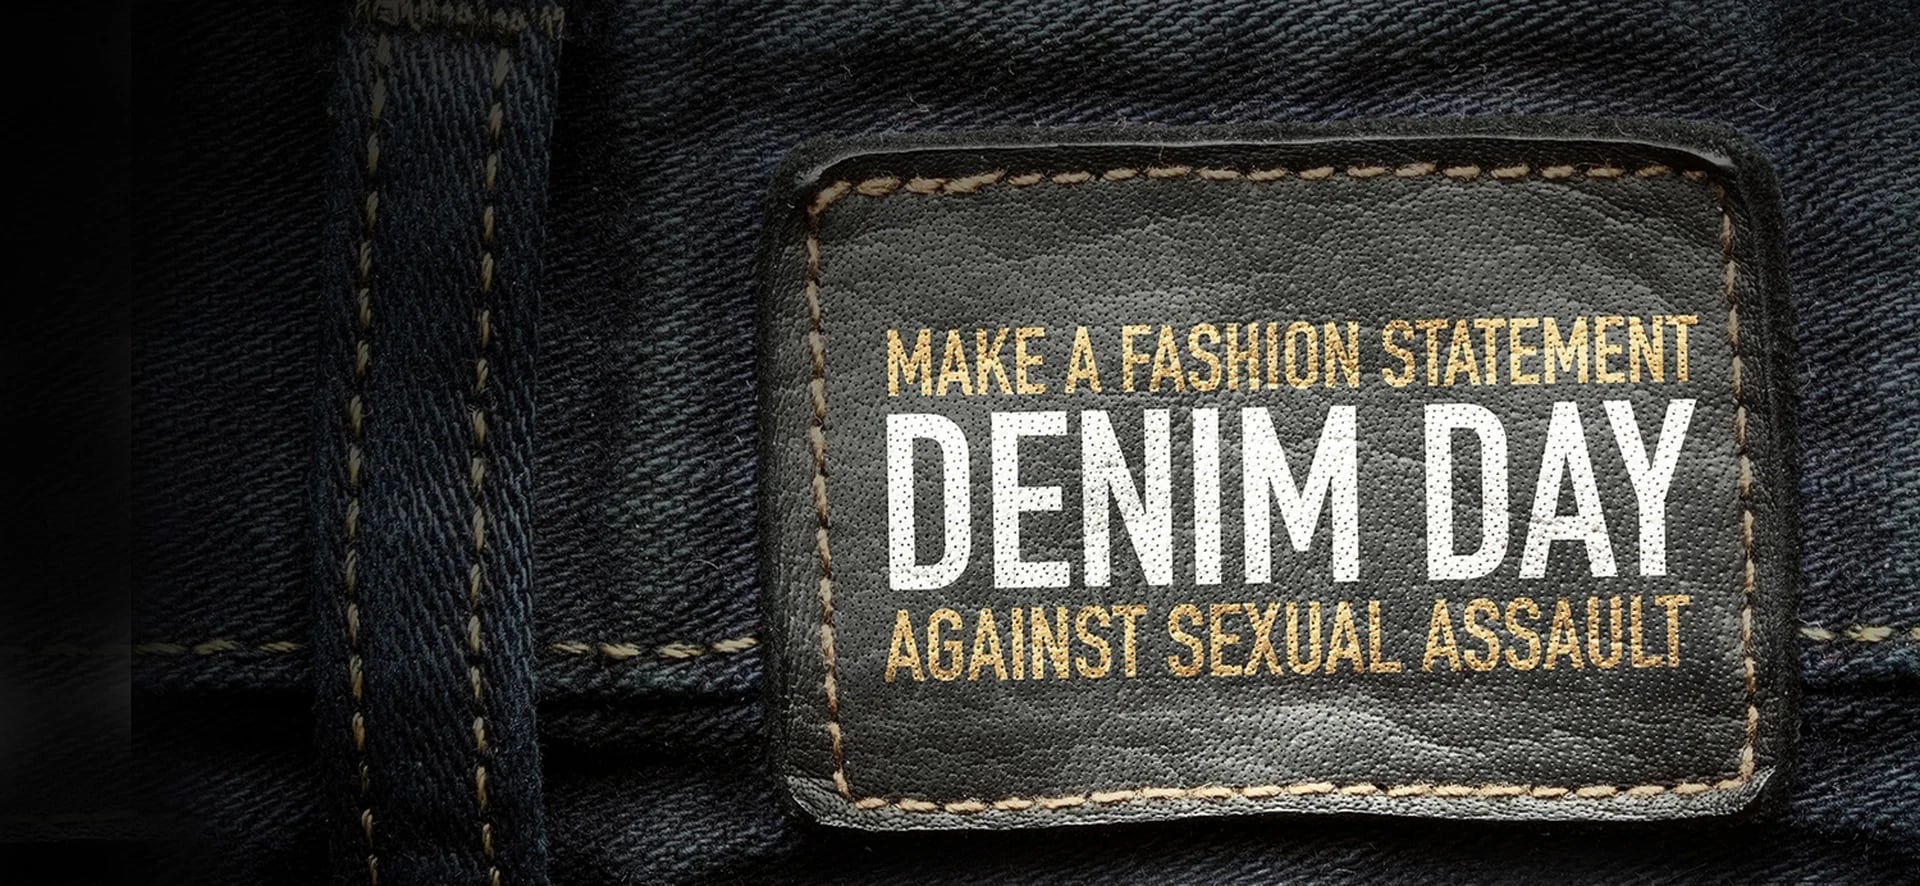 ‘Hacer moda contra el asalto sexual’ uno de los lemas de la campaña del Denim Day